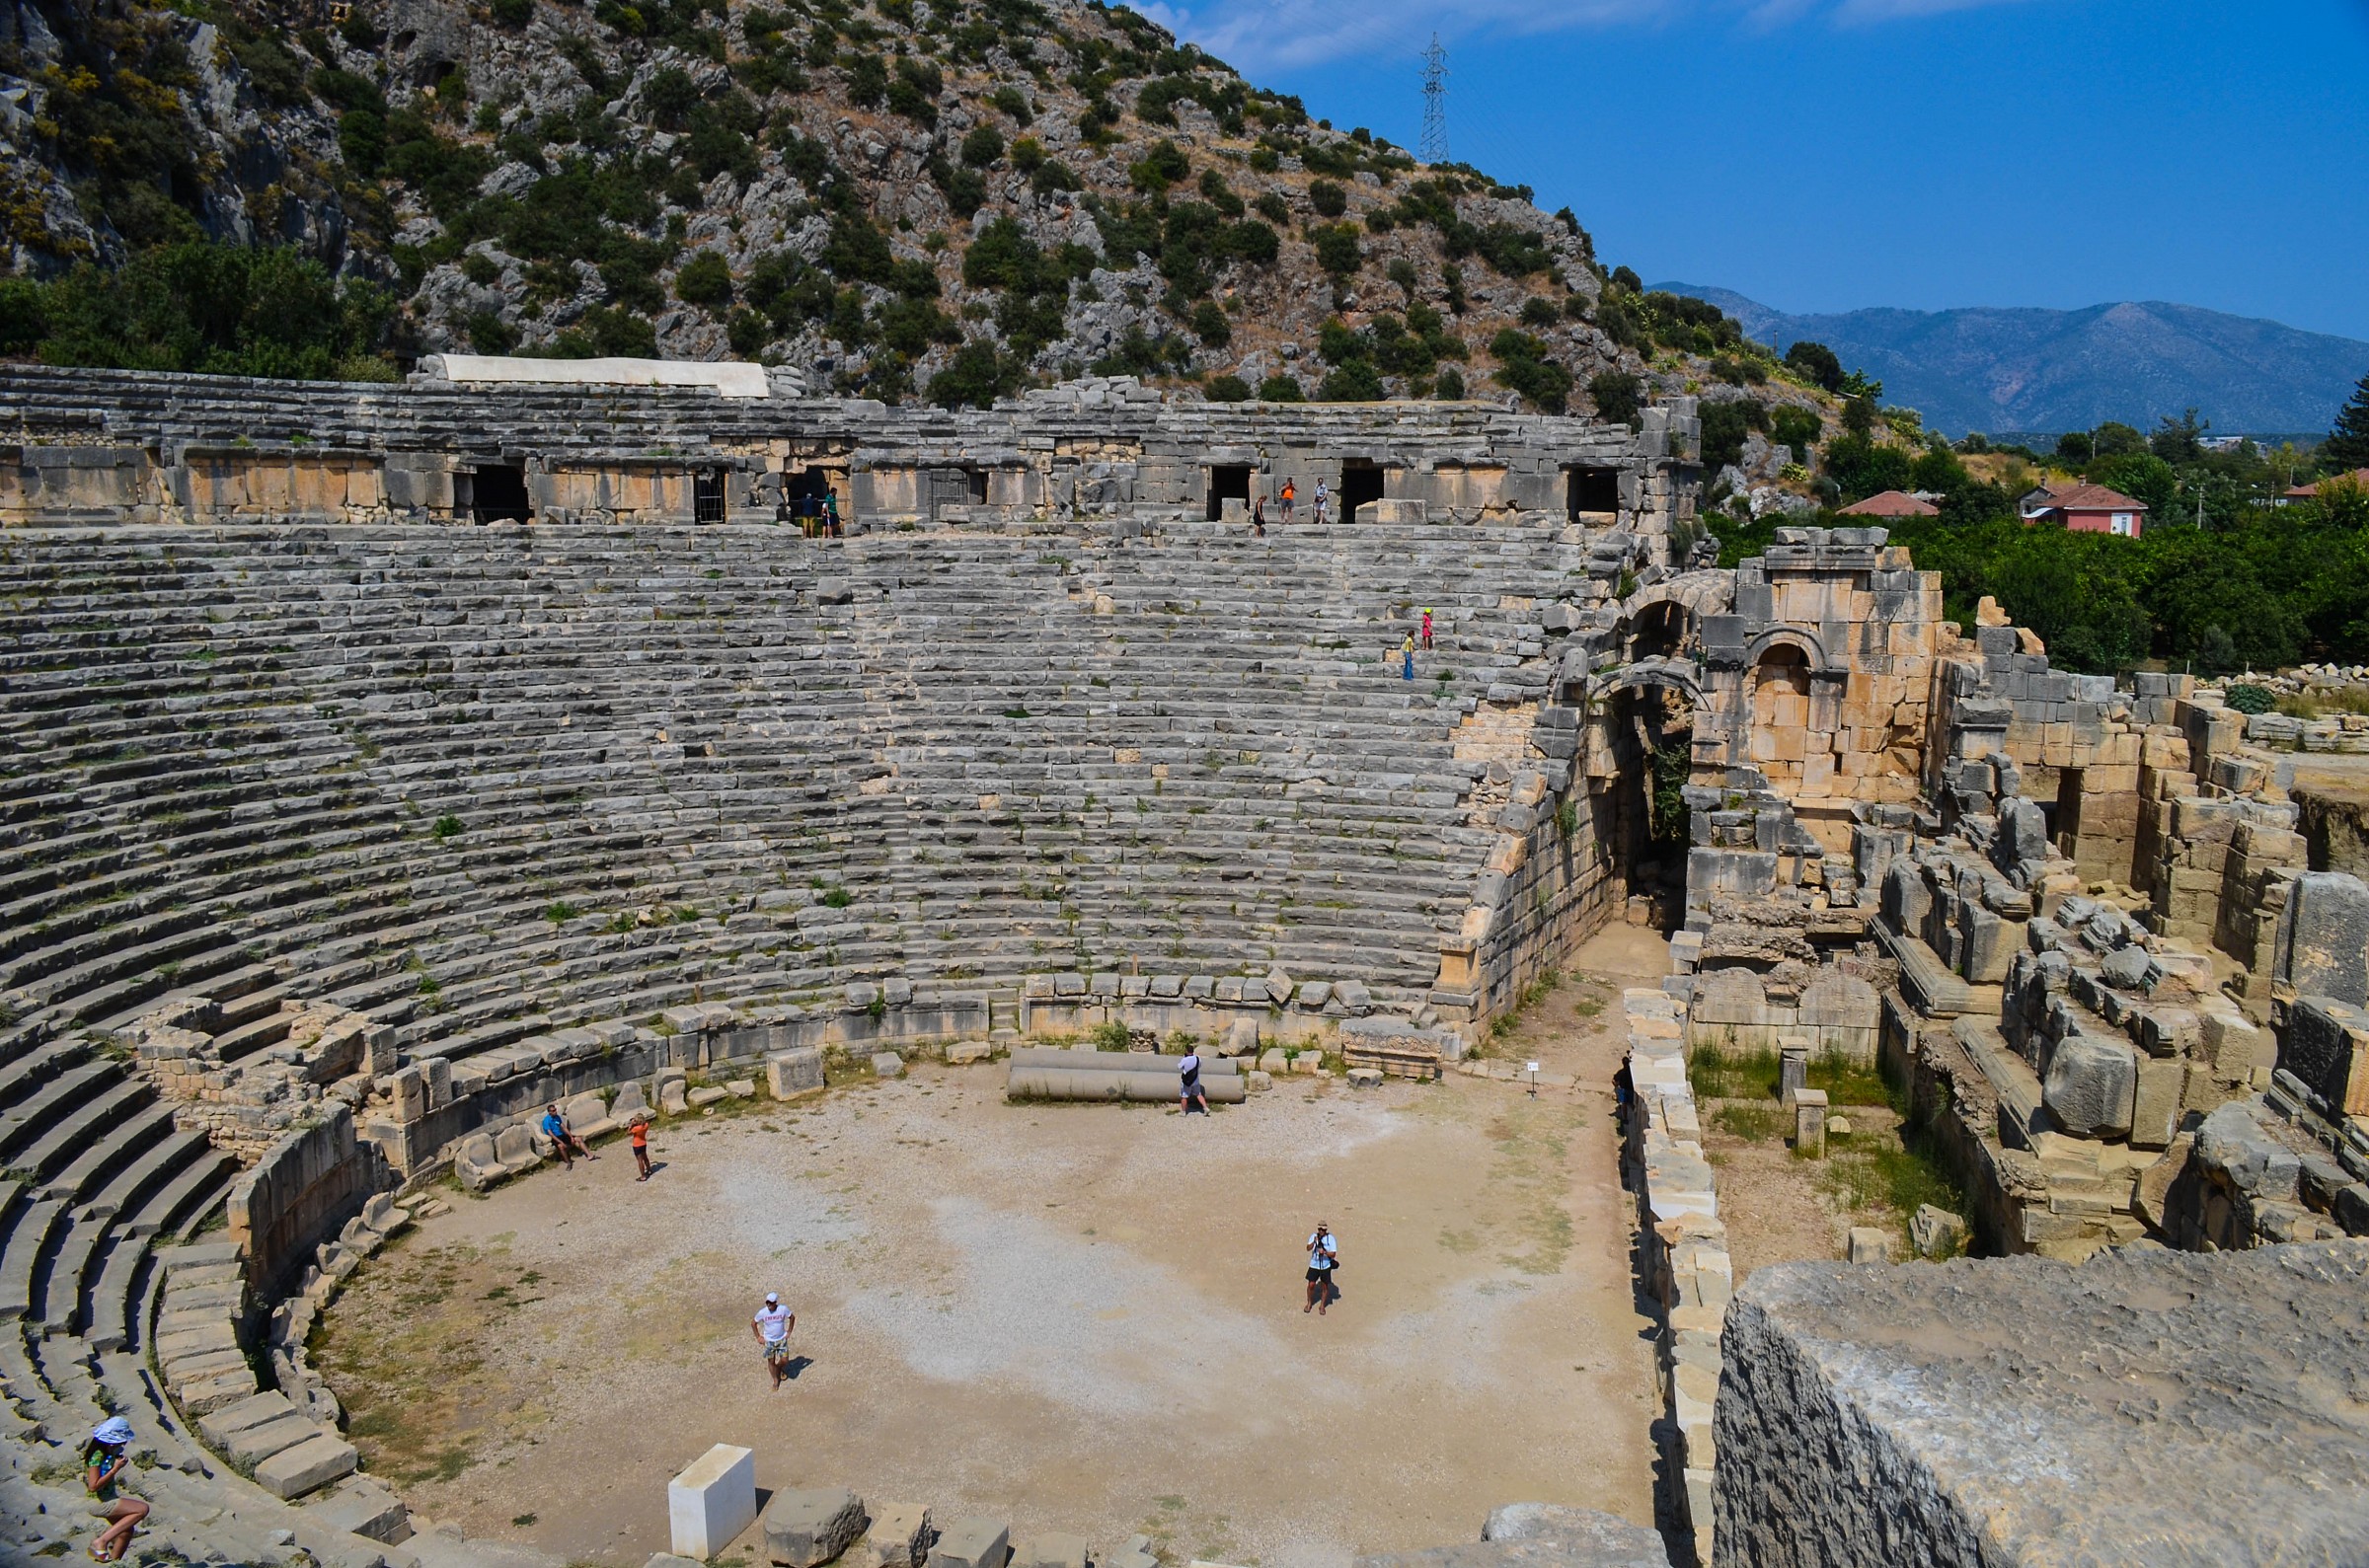 anfiteatro romano in turchia...